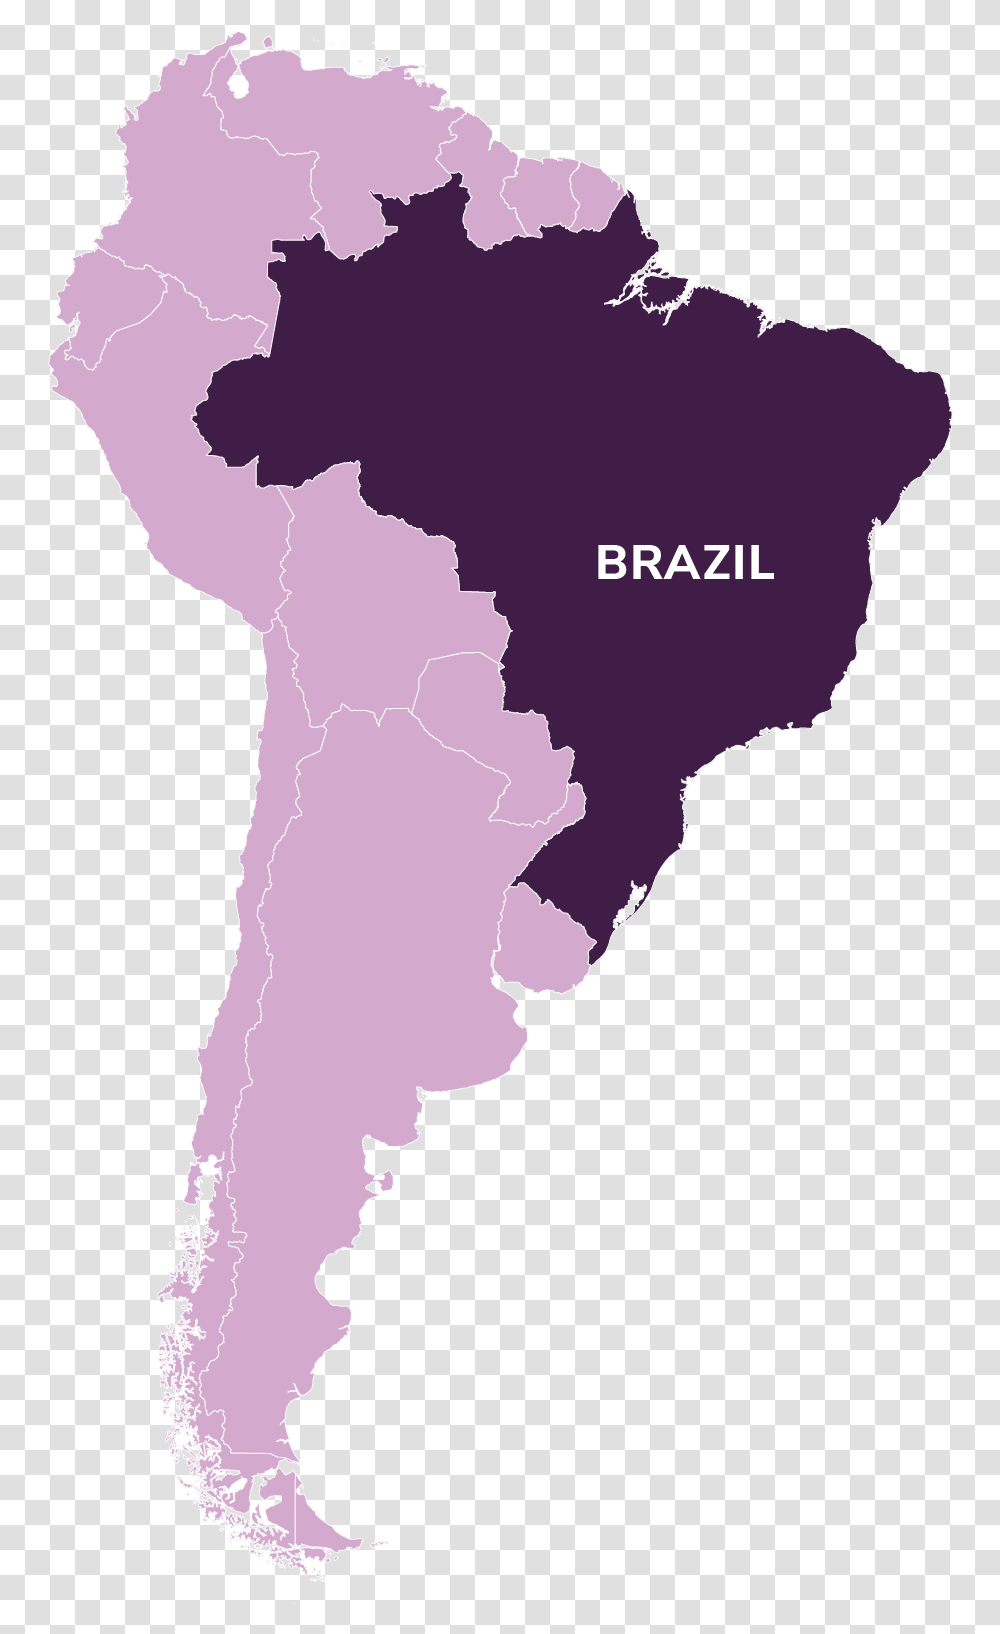 Brazil 2018 Election Map, Diagram, Plot, Atlas, Person Transparent Png